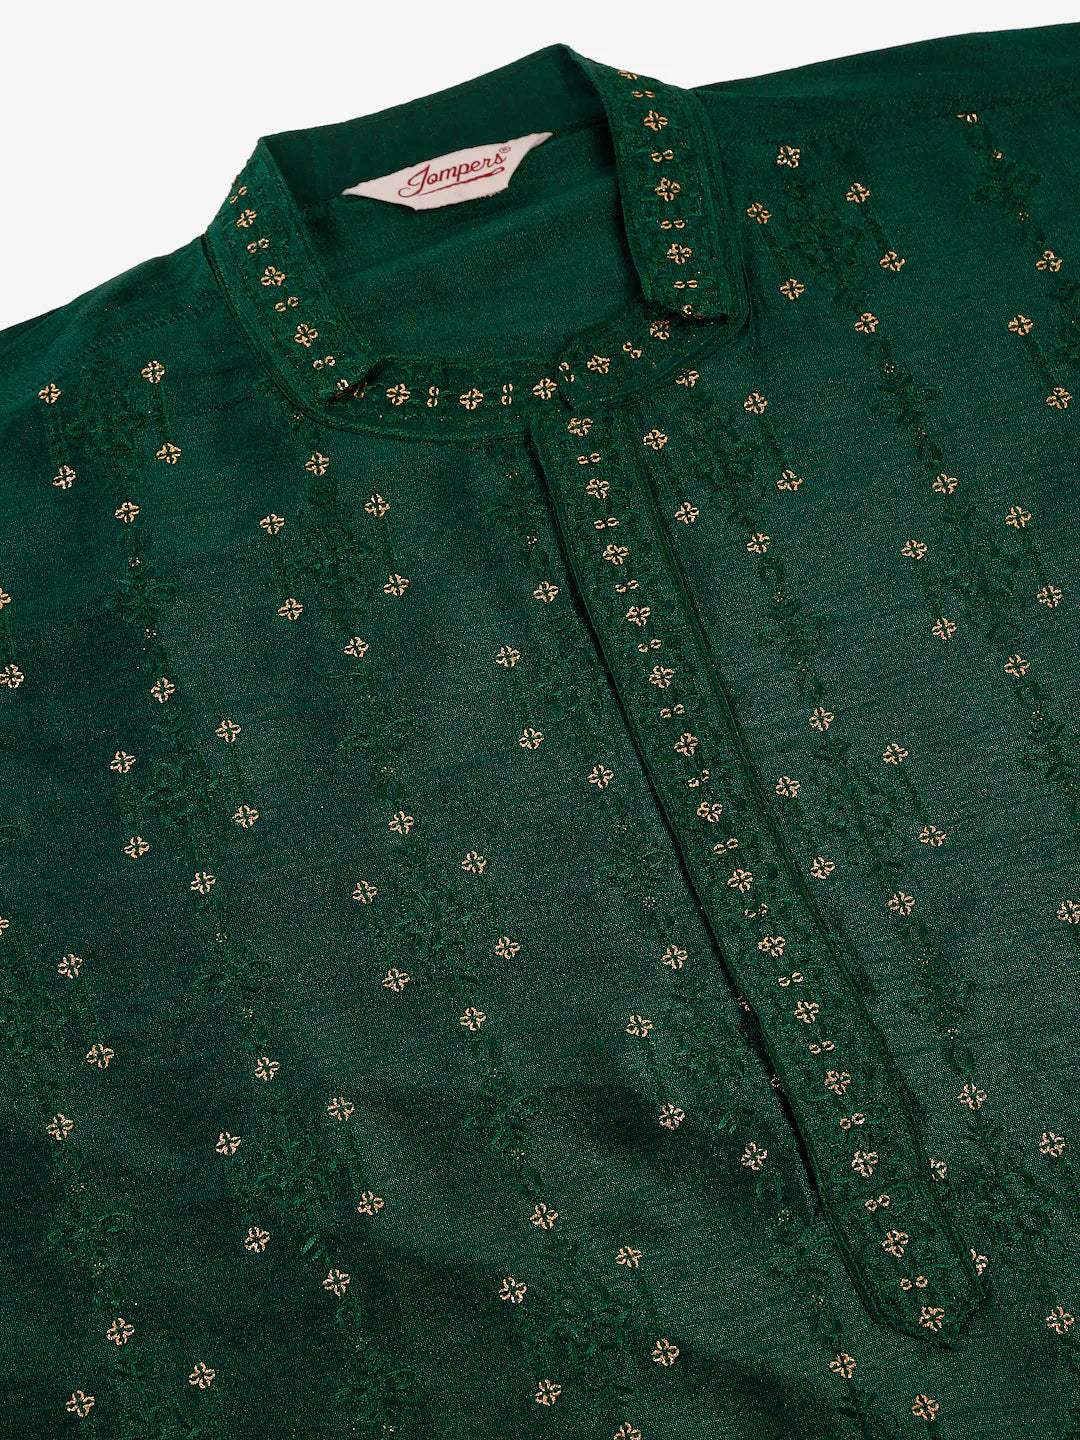 Men's Silk Blend Collar Embroidered Kurta Only ( KO 665 Green )